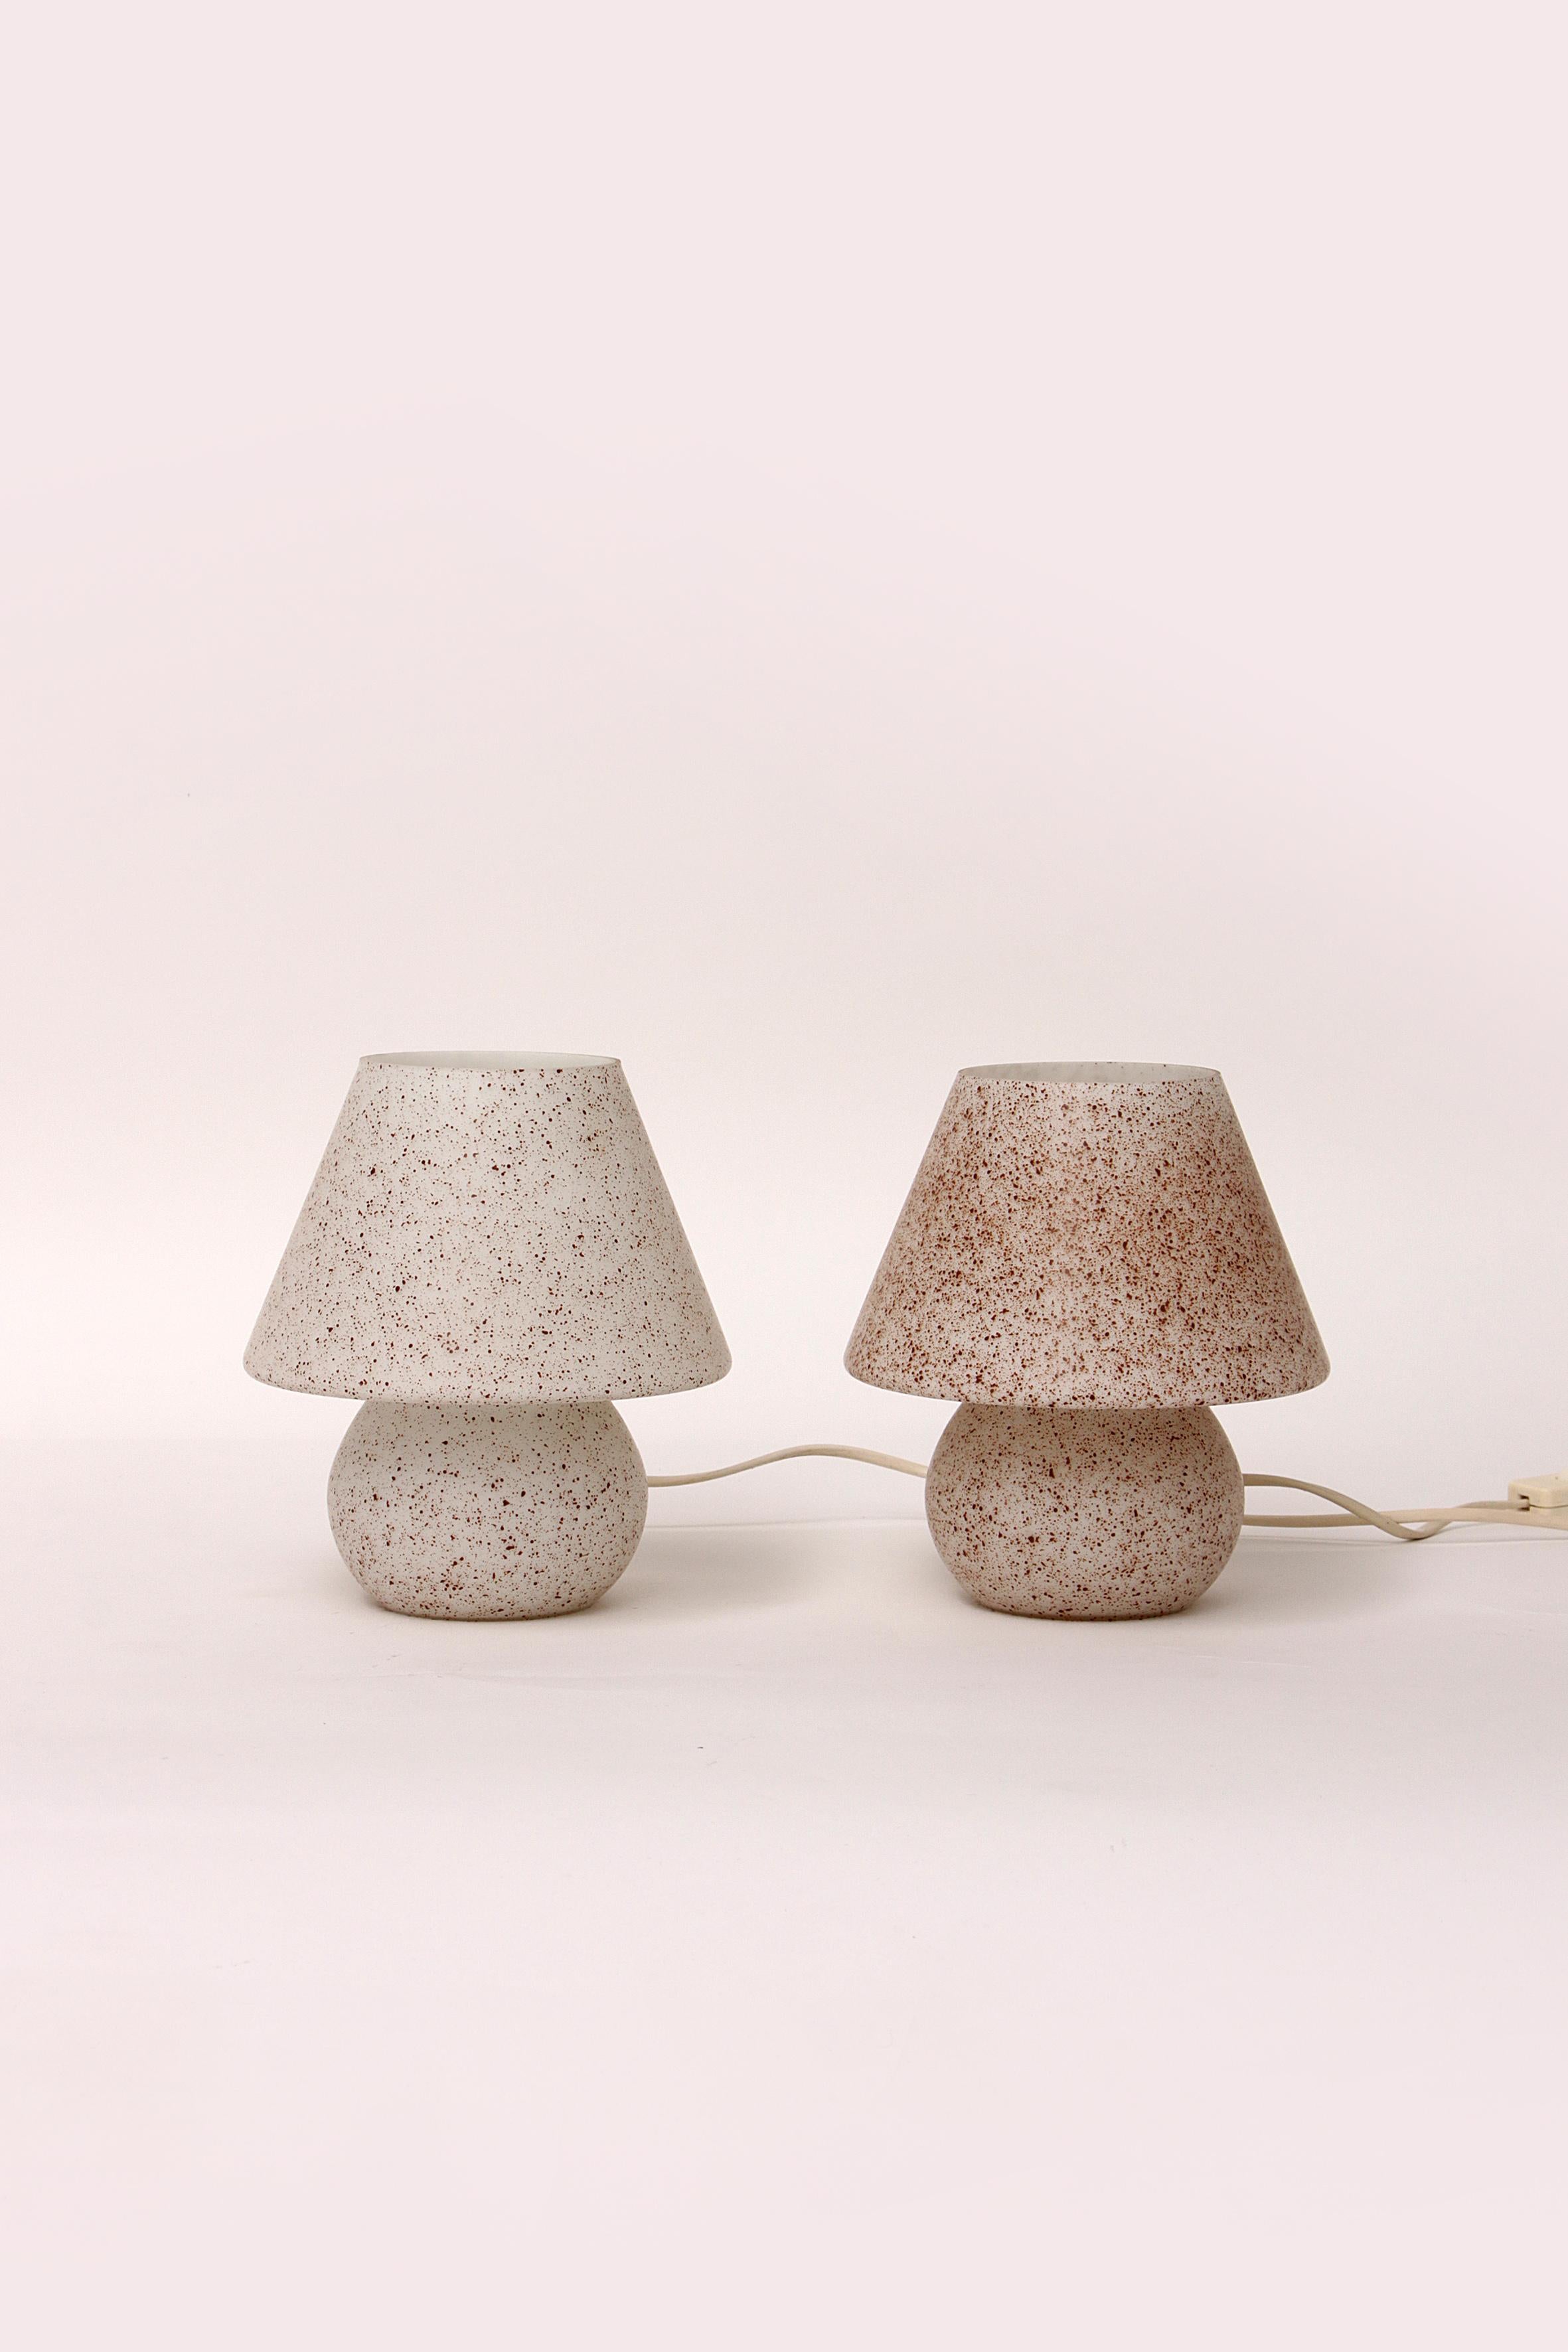 Voici 2 magnifiques lampes de table en verre Champignon ou Mushroom avec interrupteur, idéales comme lampes de chevet mais aussi magnifiques dans votre salon.

Les ampoules e14 sont dotées de petits raccords.

Le verre est joliment moucheté de brun,